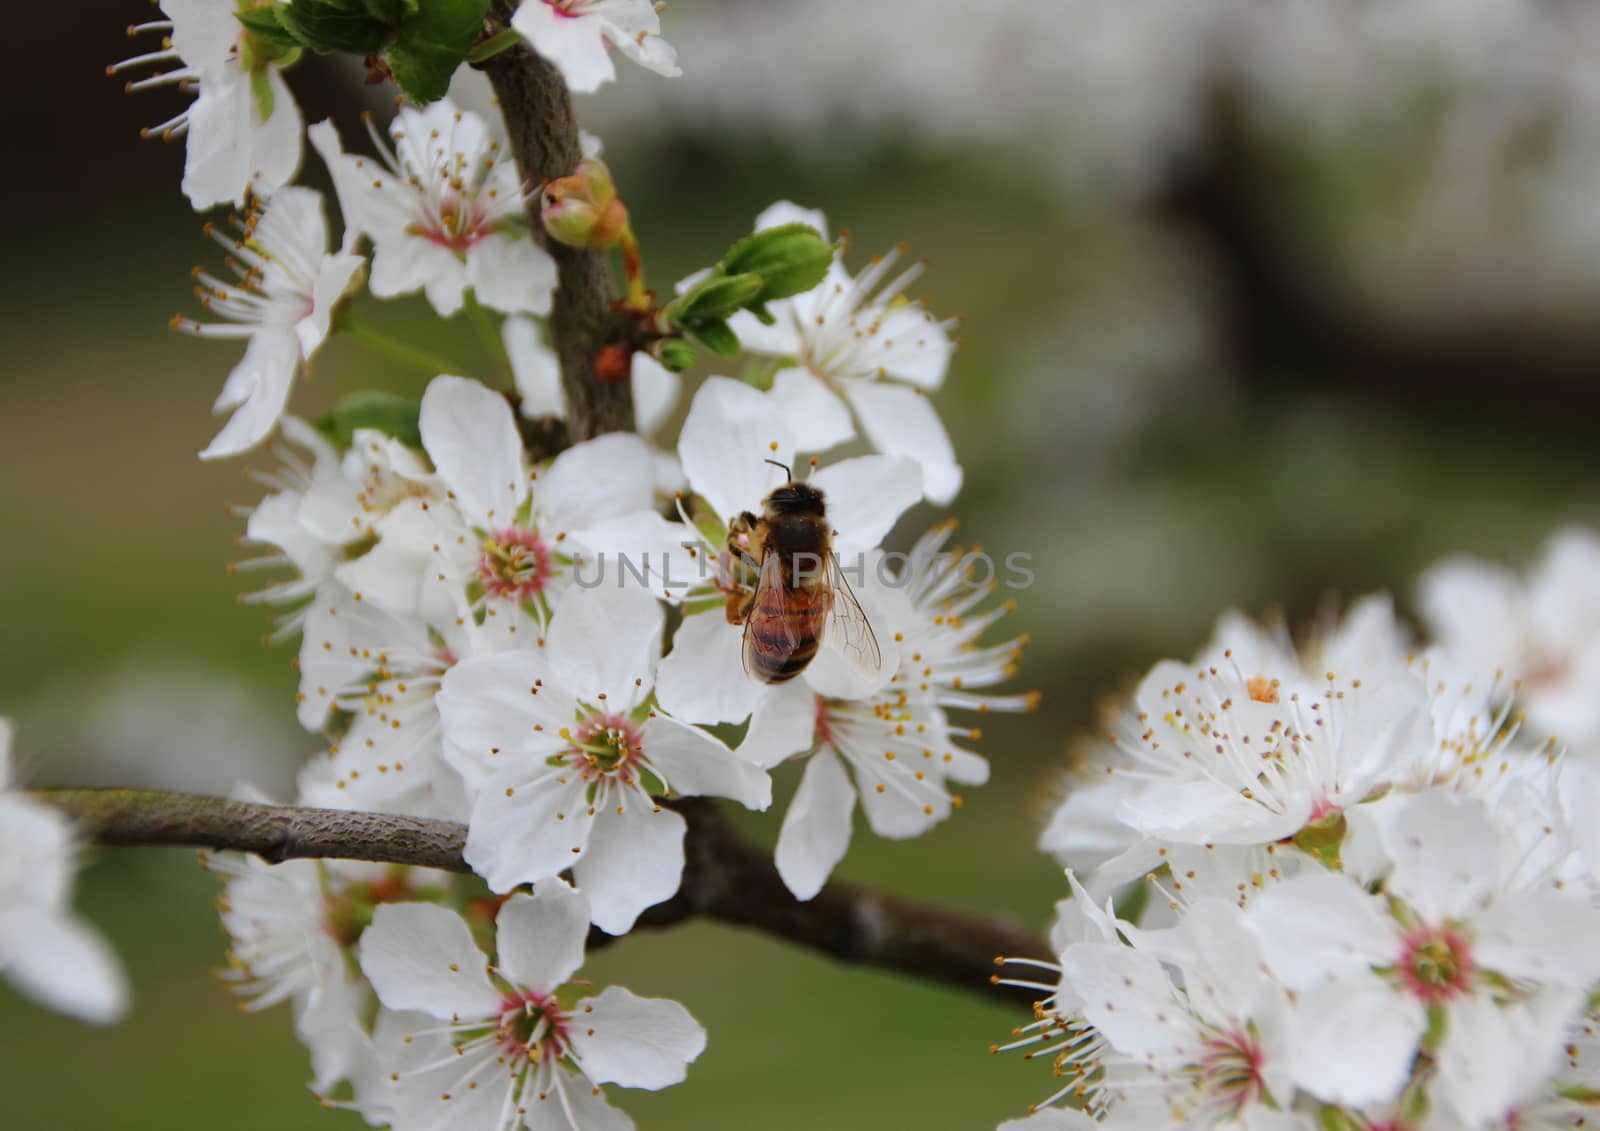 Isolated Honey Bee on White Flower Bush by HoleInTheBox